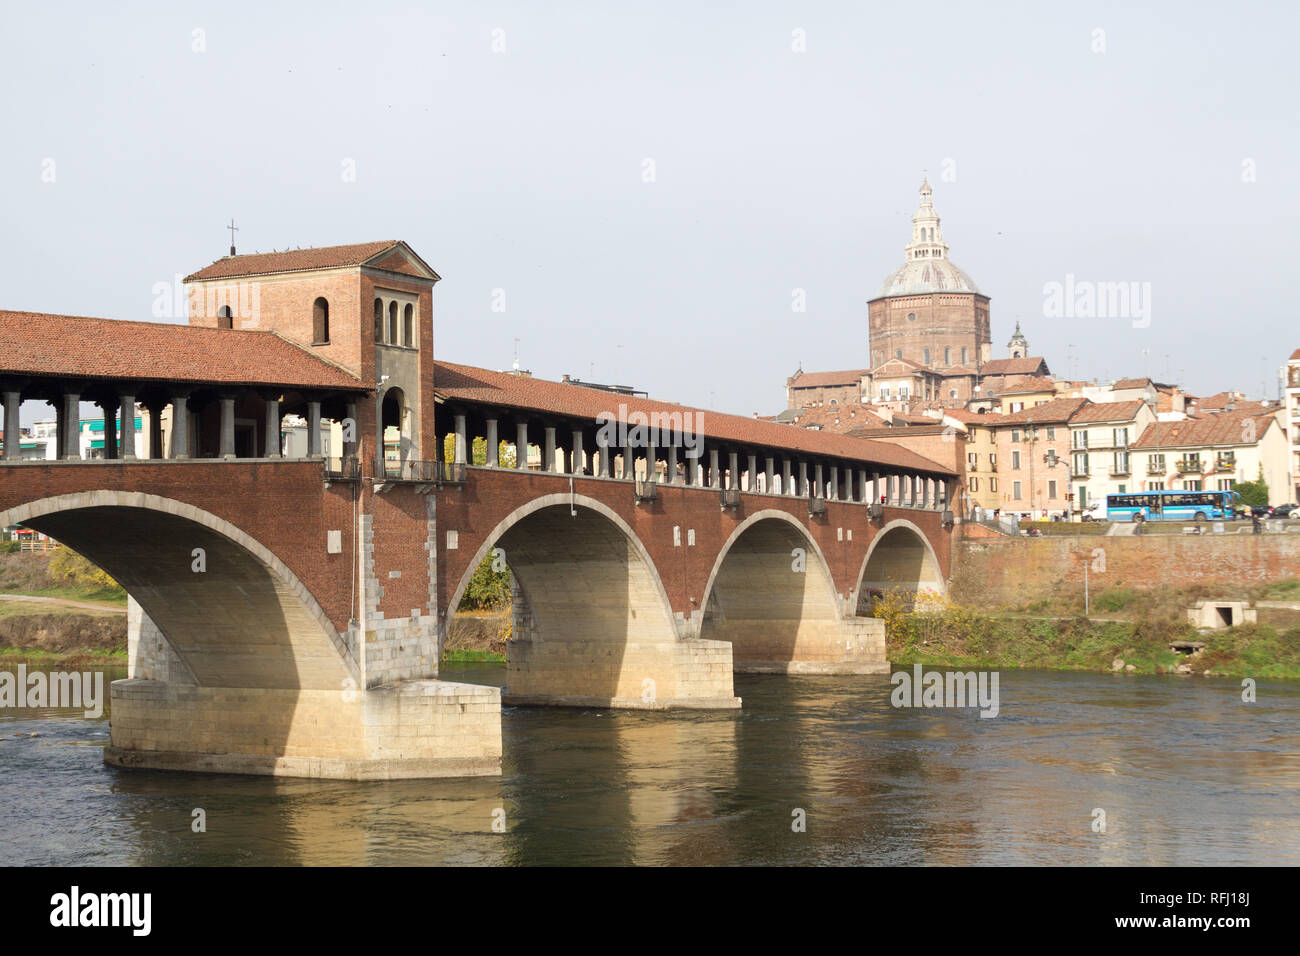 The Ponte Coperto ('covered bridge') or the Ponte Vecchio ('Old Bridge') is a brick and stone arch bridge over the Ticino River in Pavia, Italy. Stock Photo